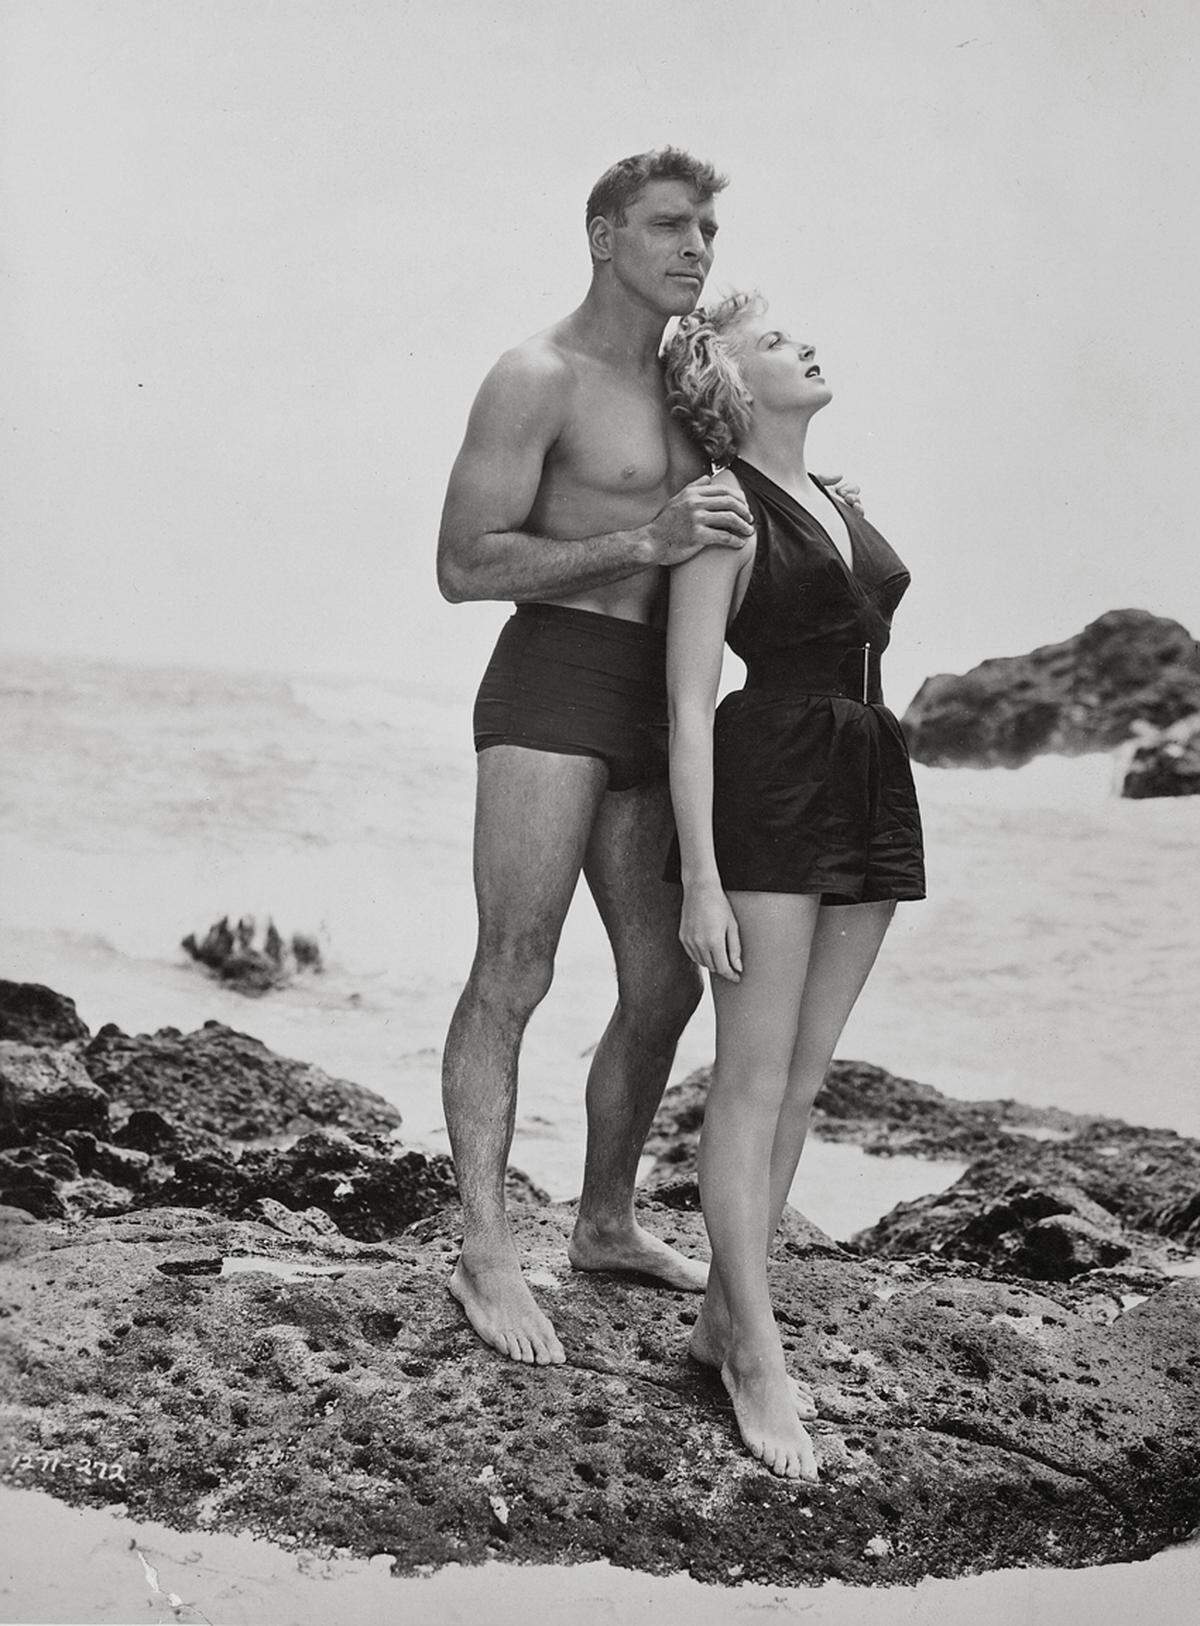 Der Badeanzug von Deborah Kerr musste mit einem kurzen Rock ausgestattet werden, sonst wäre das Outfit der Schauspielerin zu provokant für die Sittenwächter gewesen. Die Strandszene mit Burt Lancaster verhalf ihr dennoch zu Ruhm.